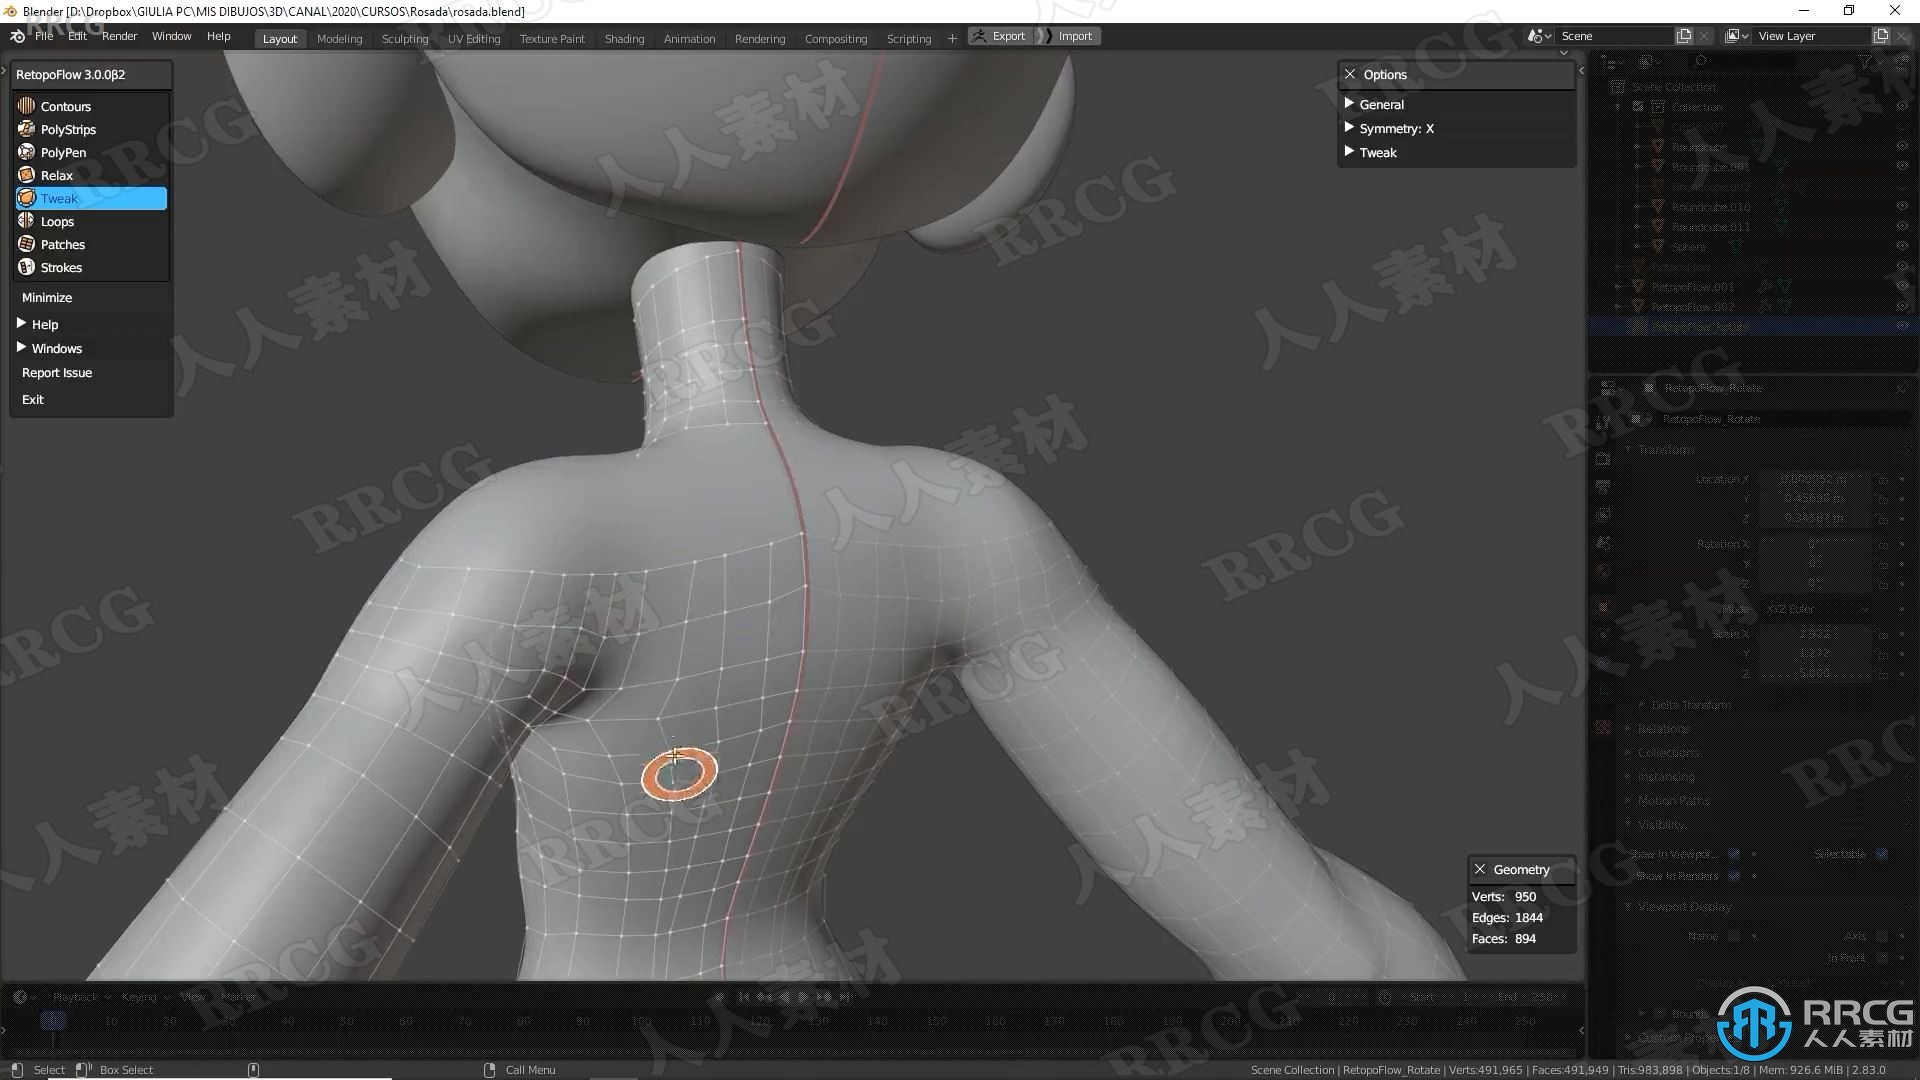 【中文字幕】Blender与Substance Painter完整3D动画角色创作视频教程